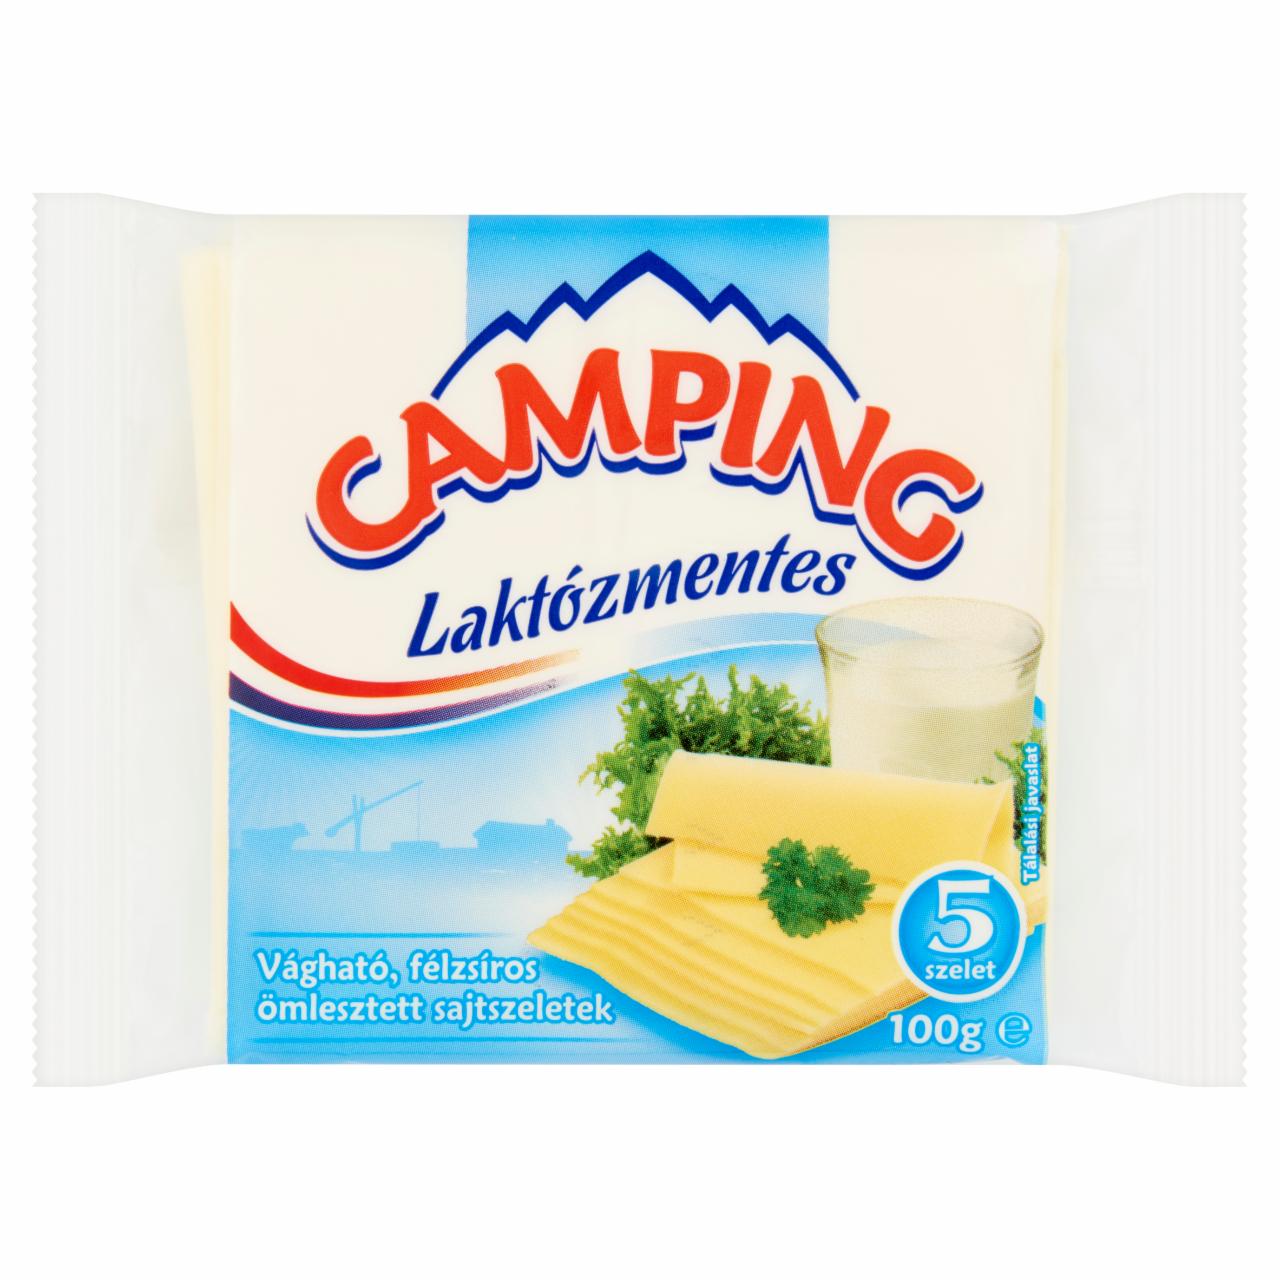 Képek - Camping laktózmentes vágható, félzsíros ömlesztett sajtszeletek 5 db 100 g